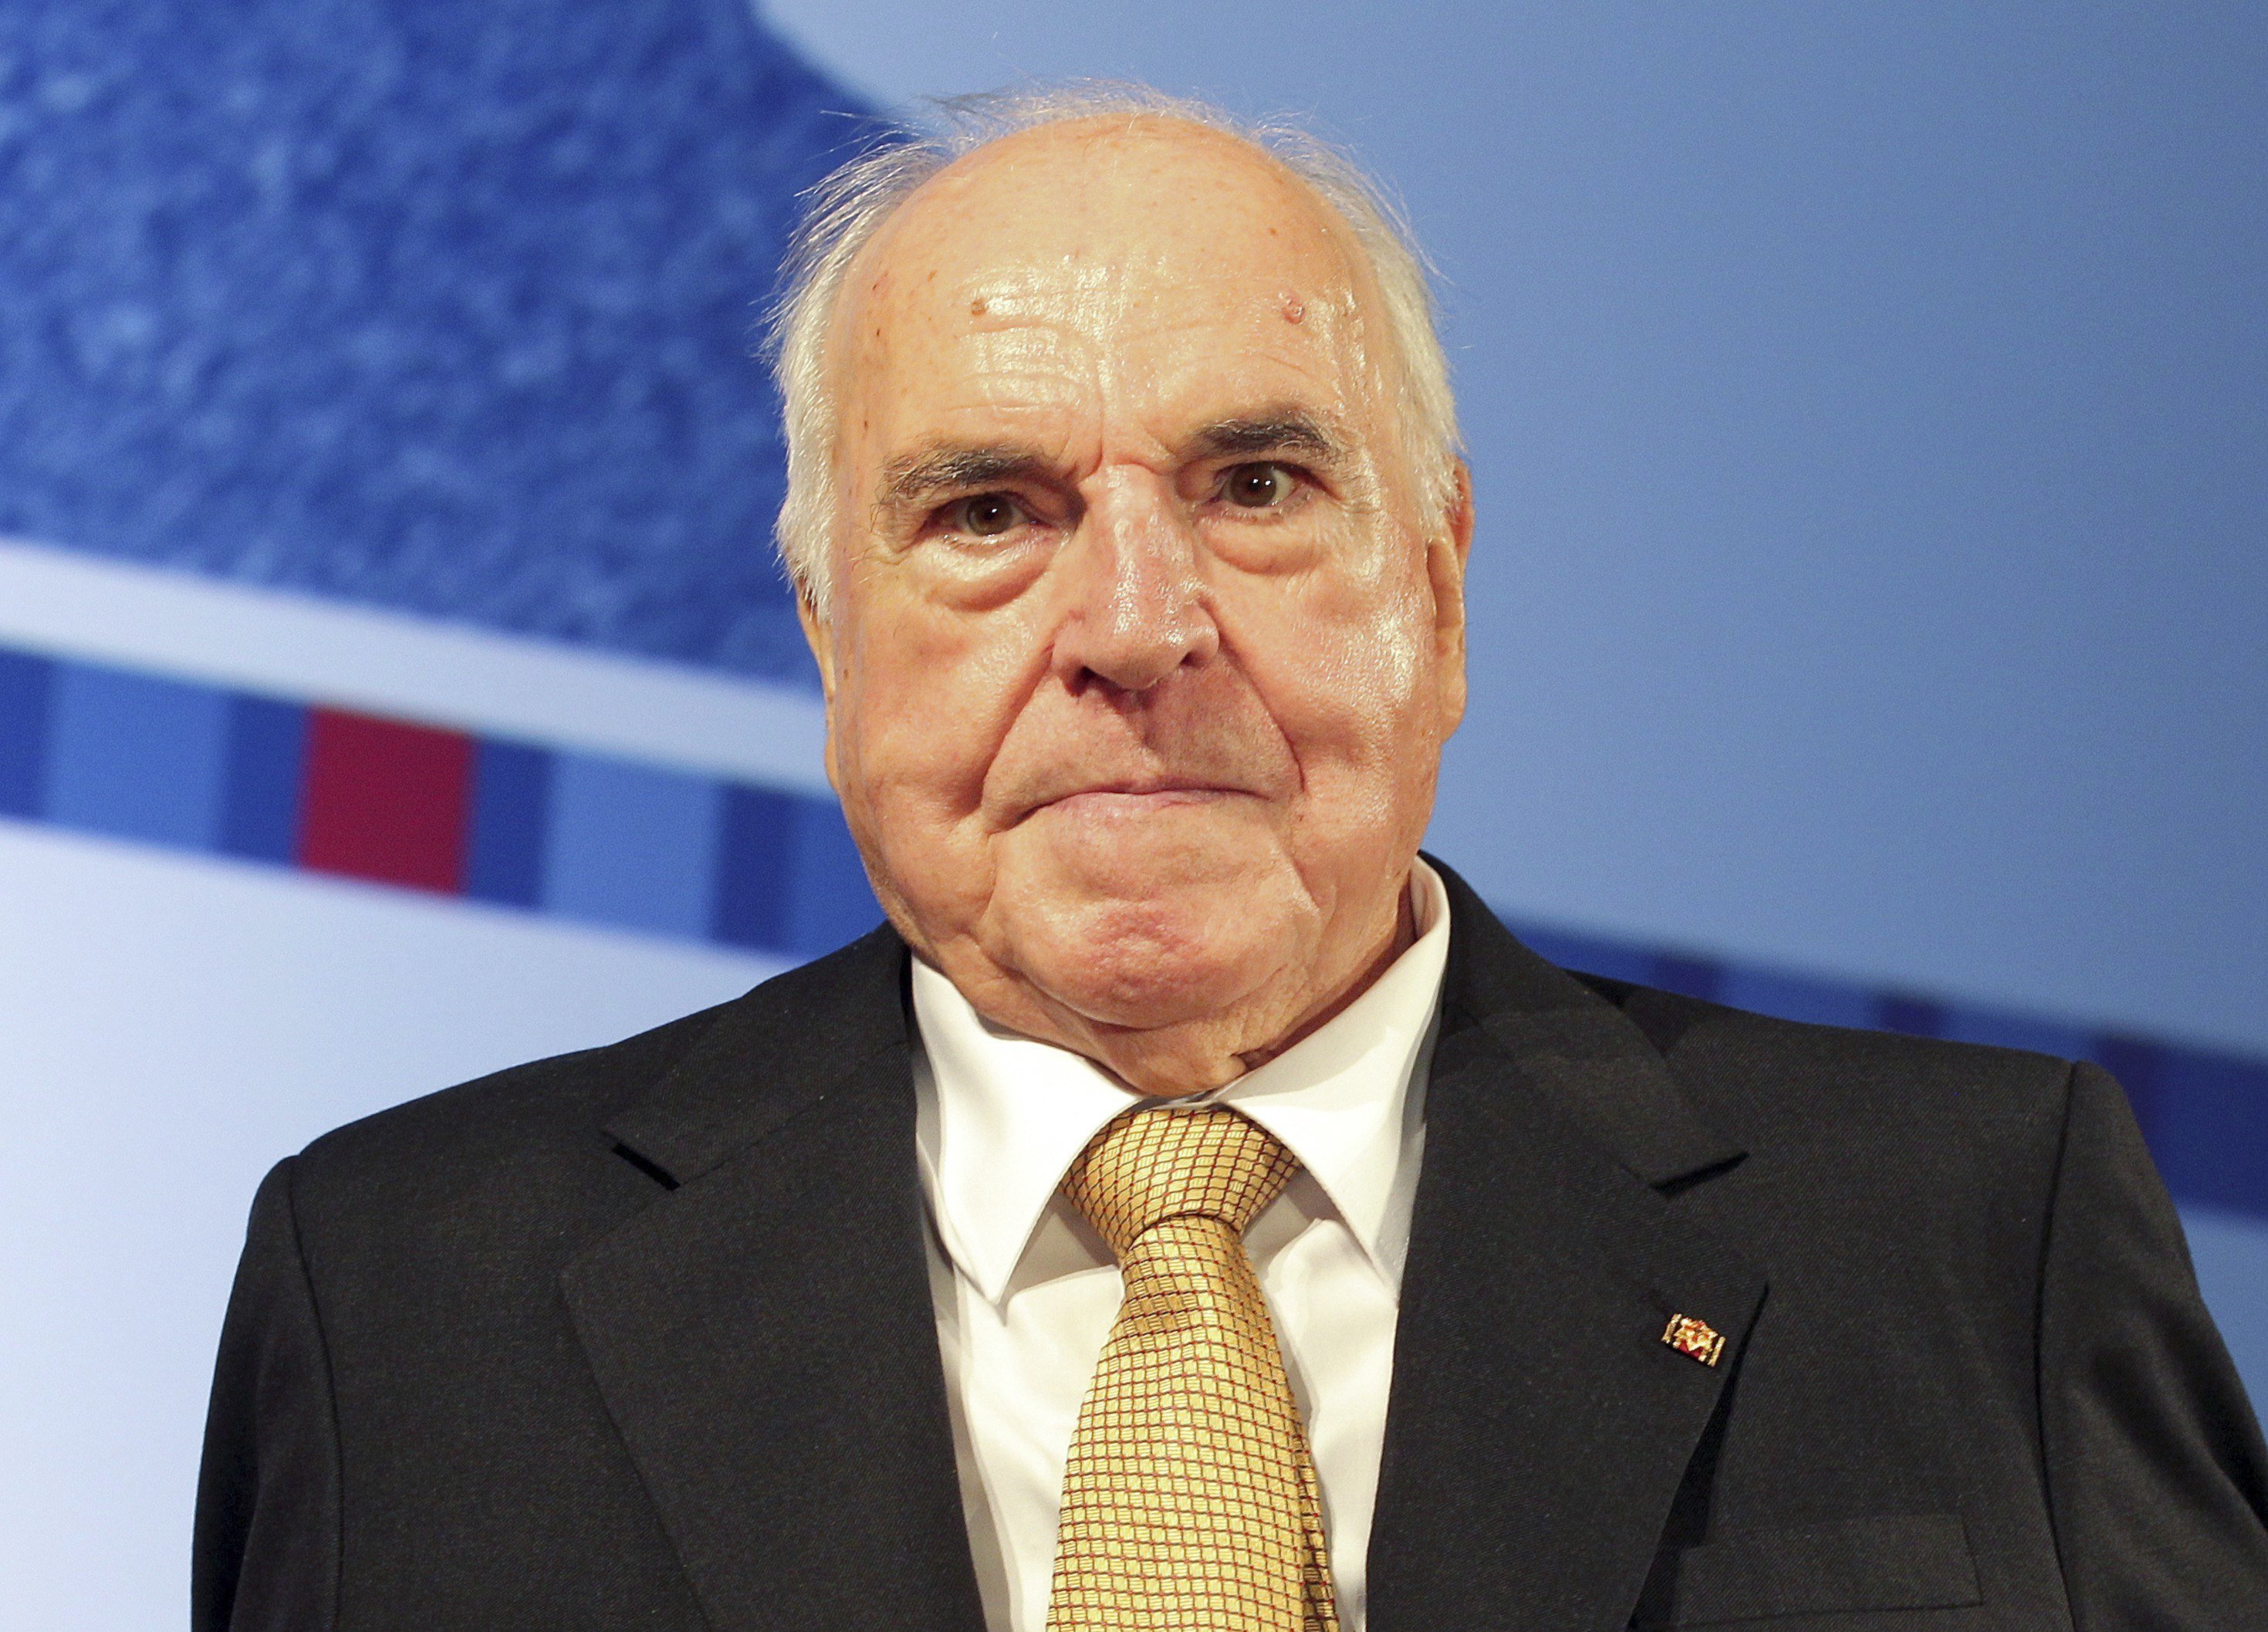 Muere Helmut Kohl, artífice de la reunificación alemana